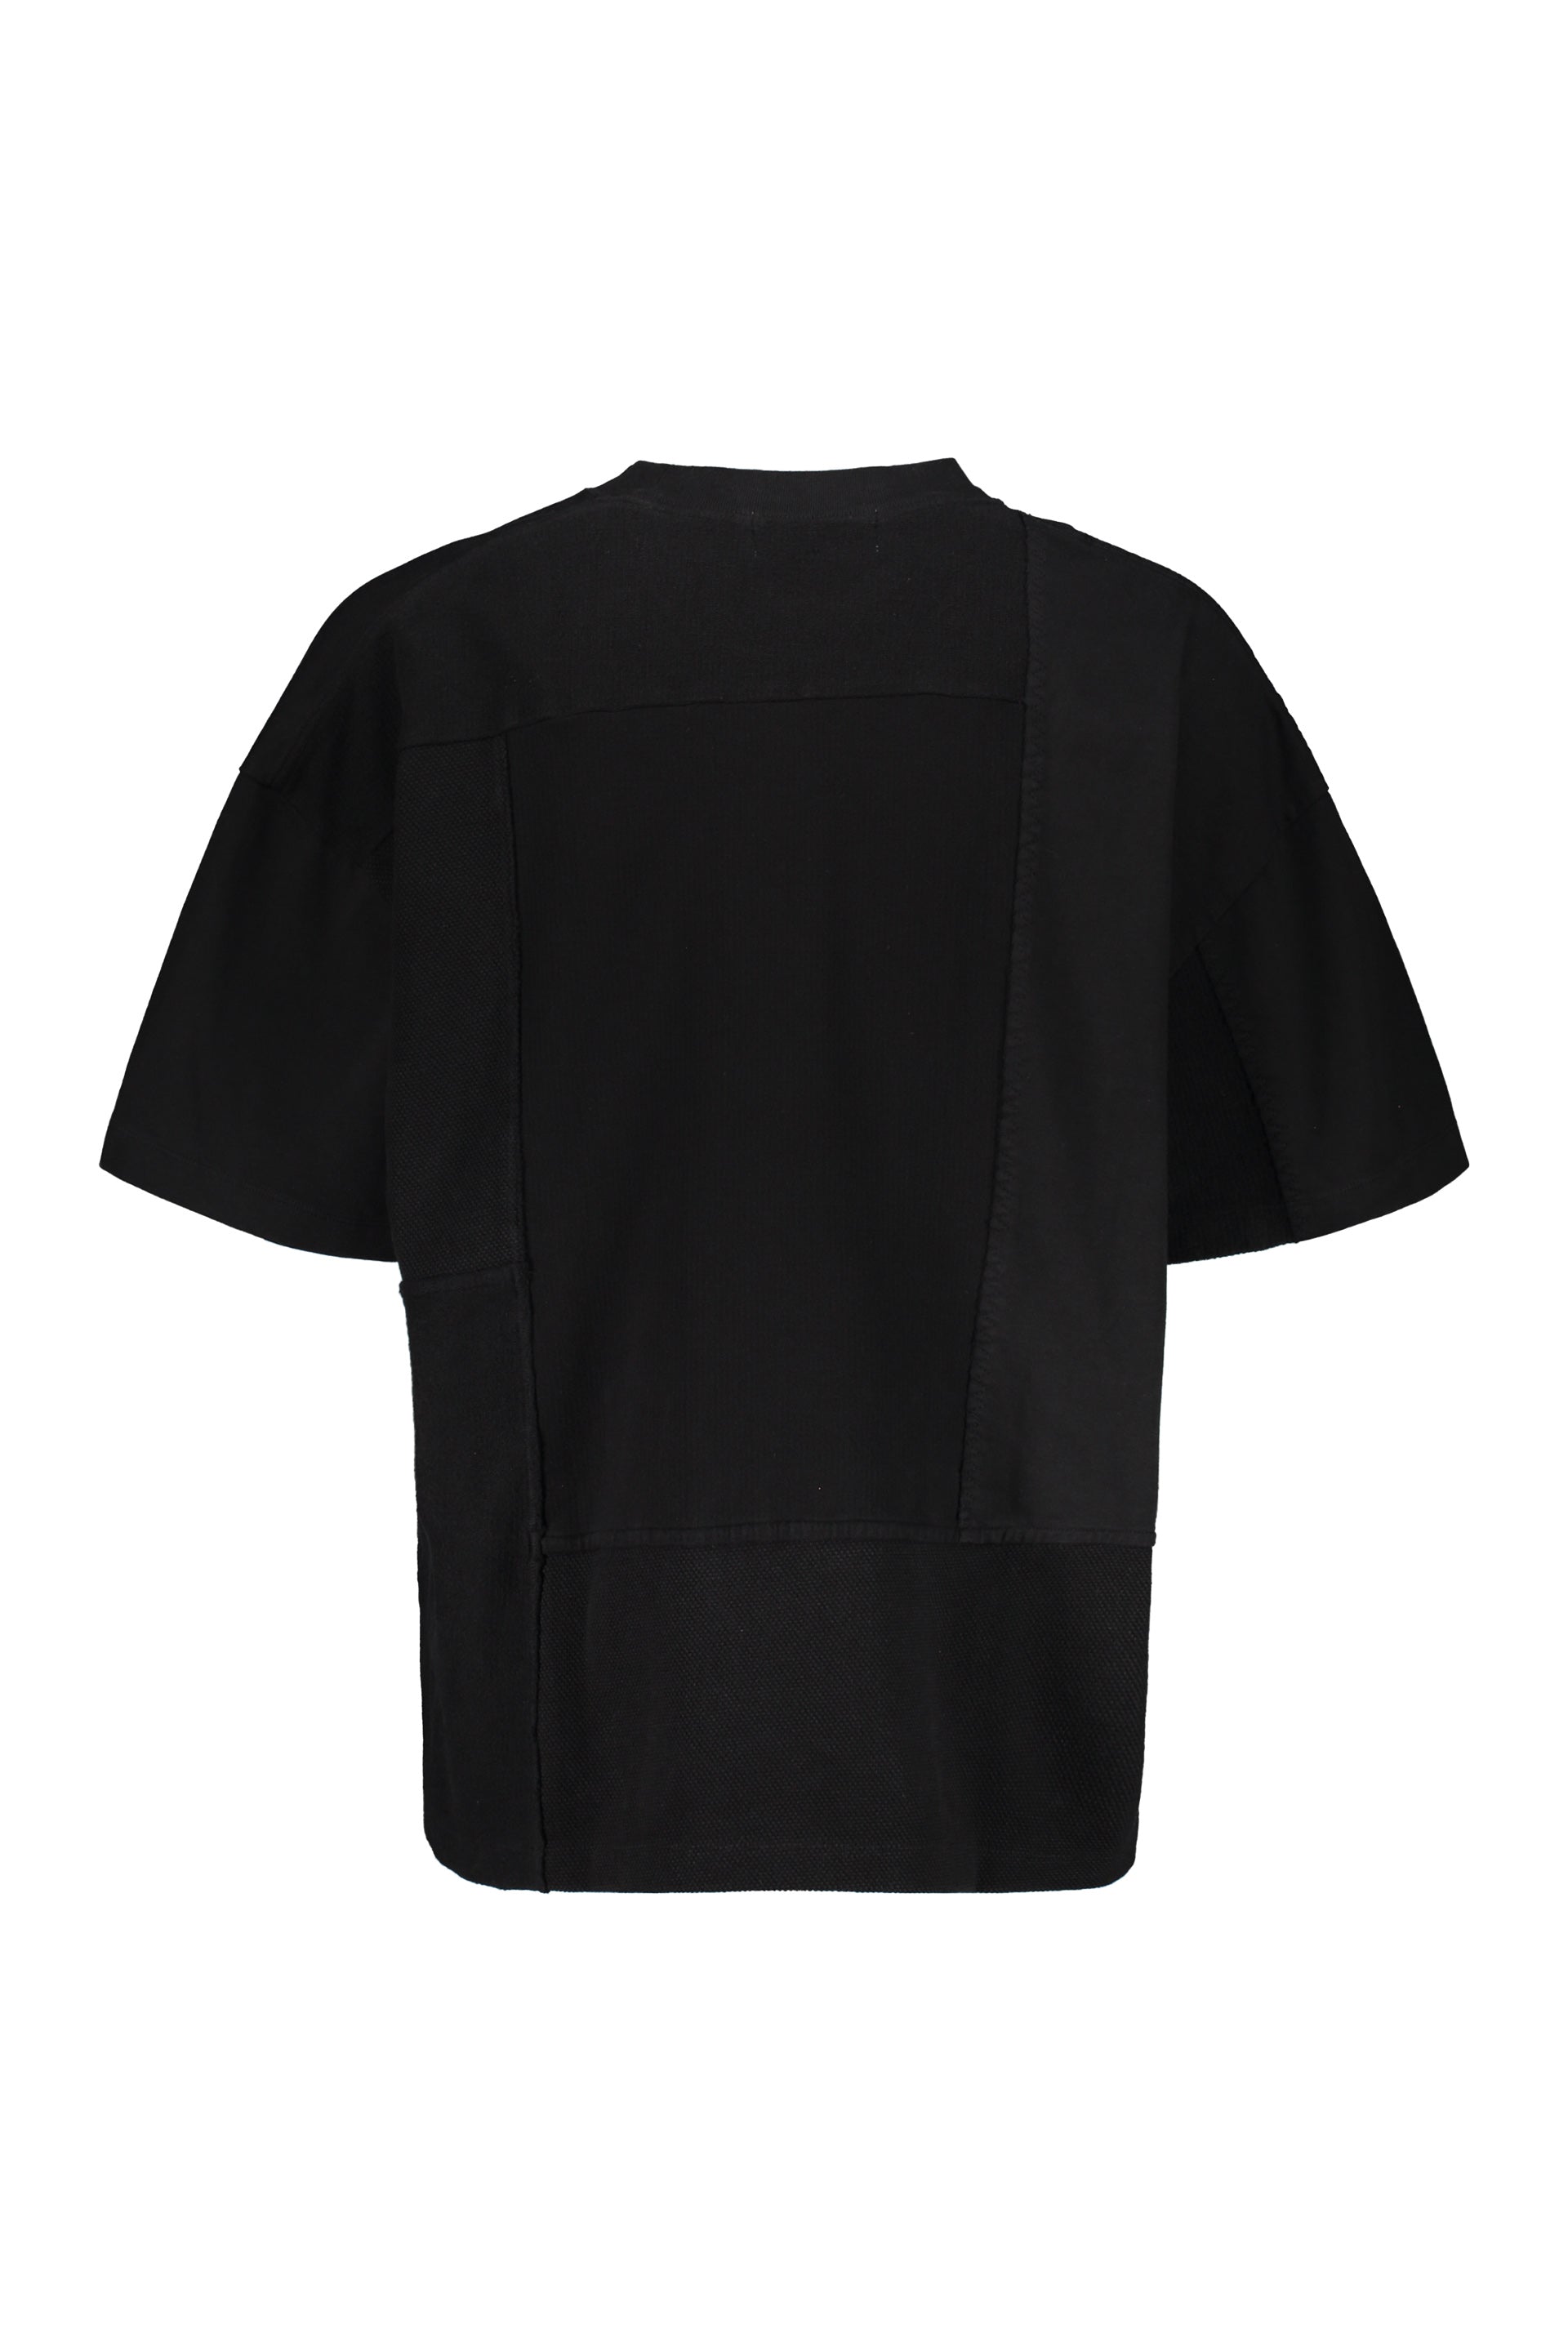 AMBUSH-OUTLET-SALE-Cotton-maxi-T-shirt-Shirts-S-ARCHIVE-COLLECTION-2_a8fb05f4-3207-4c7e-a8a8-b75320d8ebd1.jpg